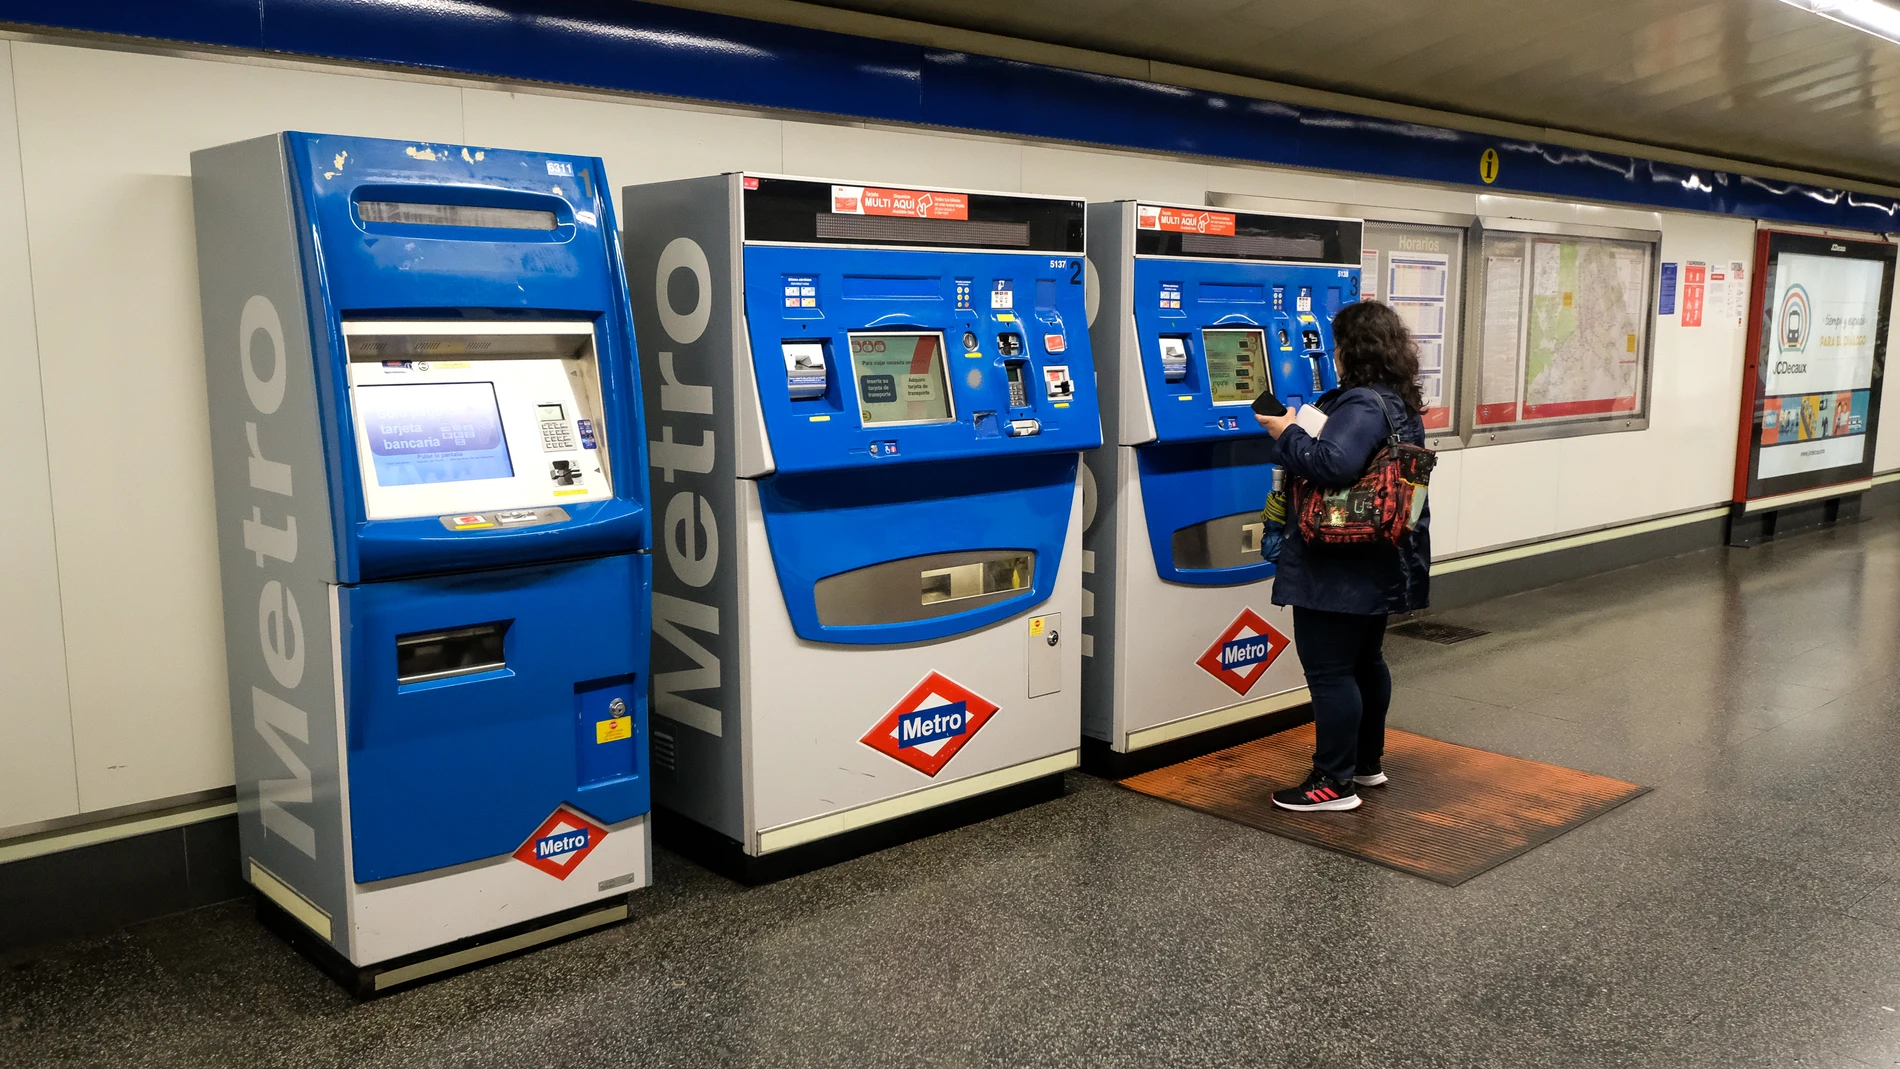 Poca afluencia en el Metro de Madrid durante la tercera semana de confinamiento por coronavirus